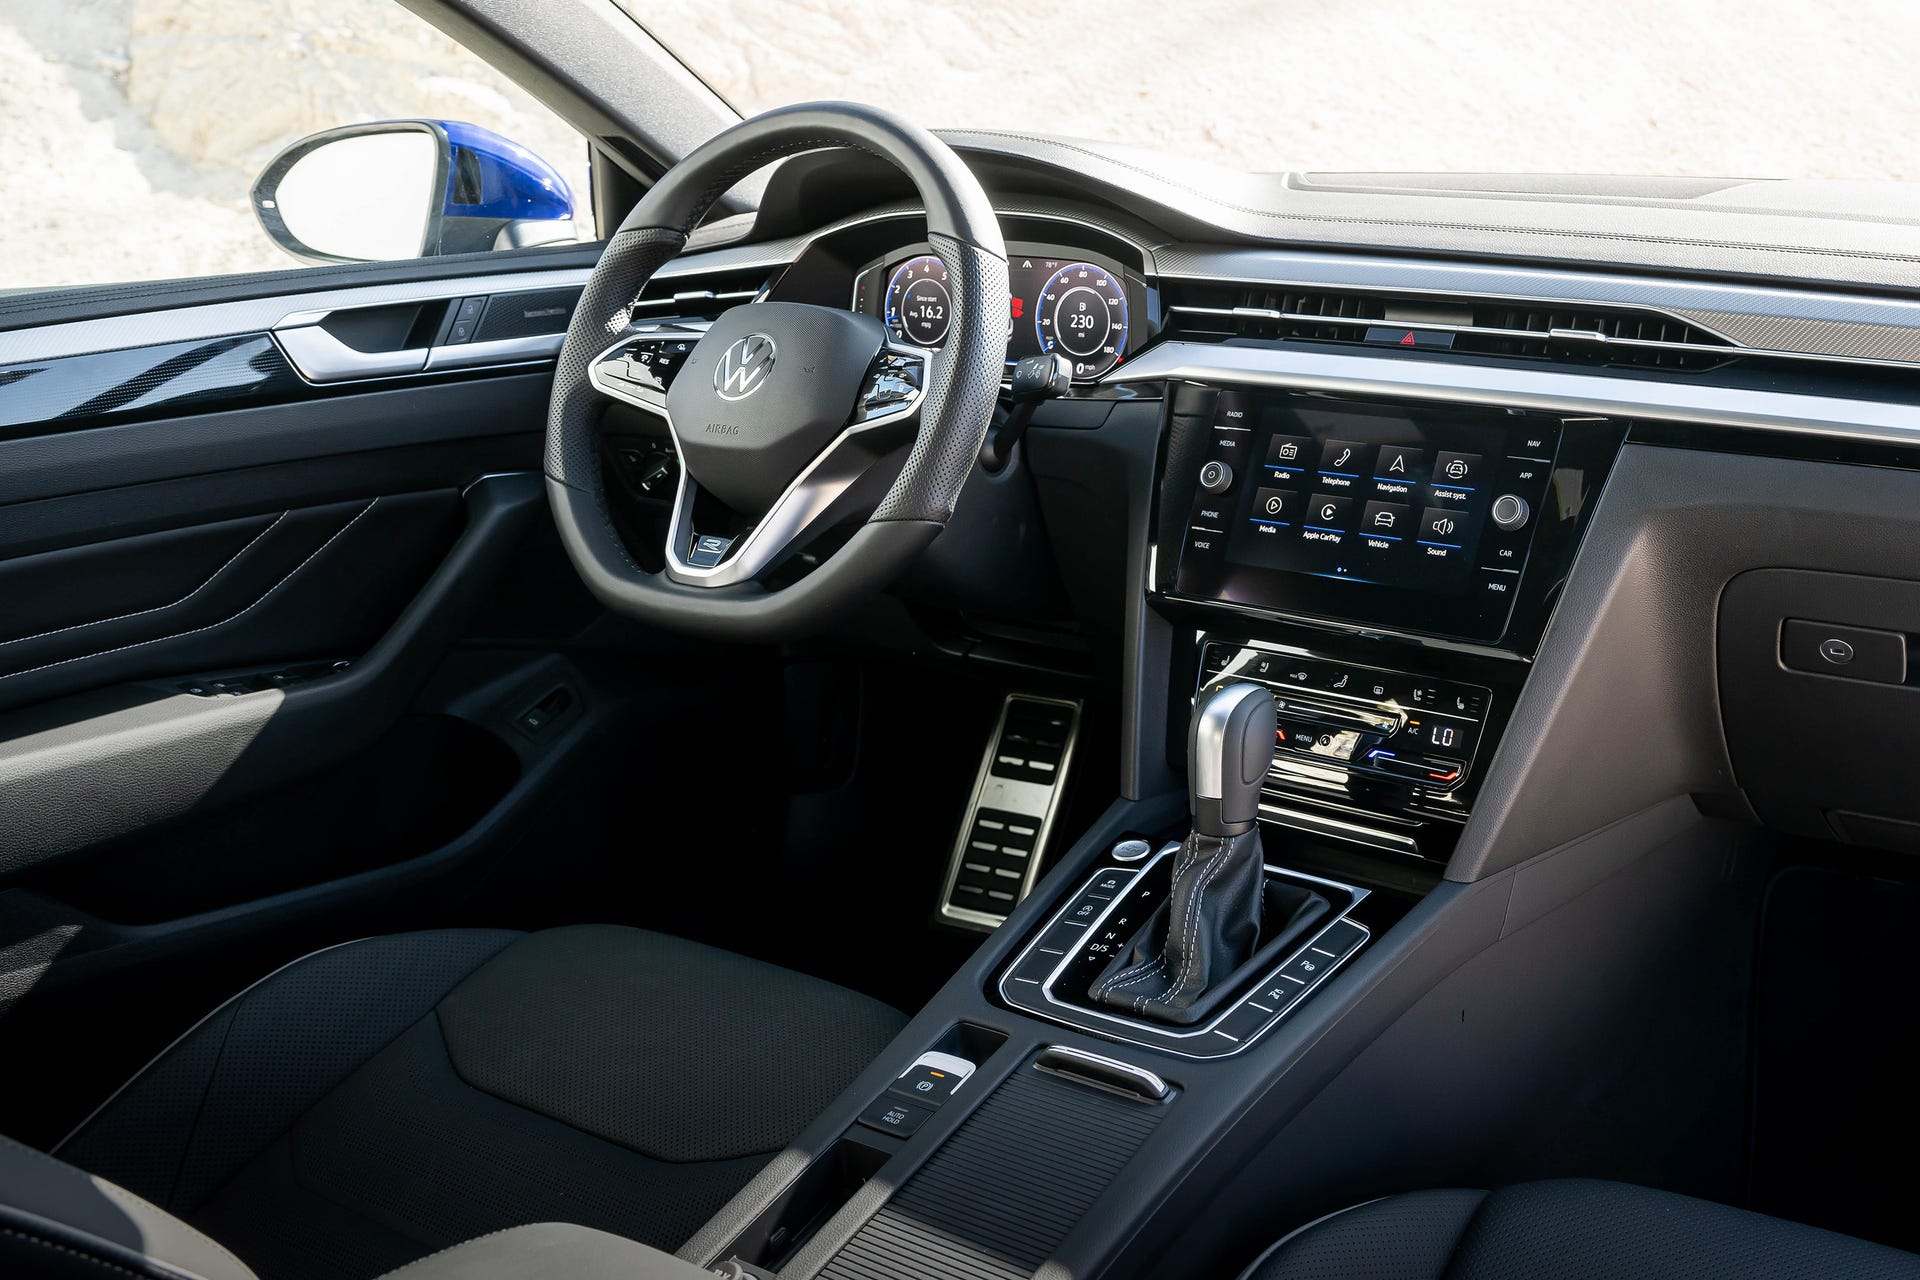 2022 Volkswagen Arteon driver's controls and steering wheel.